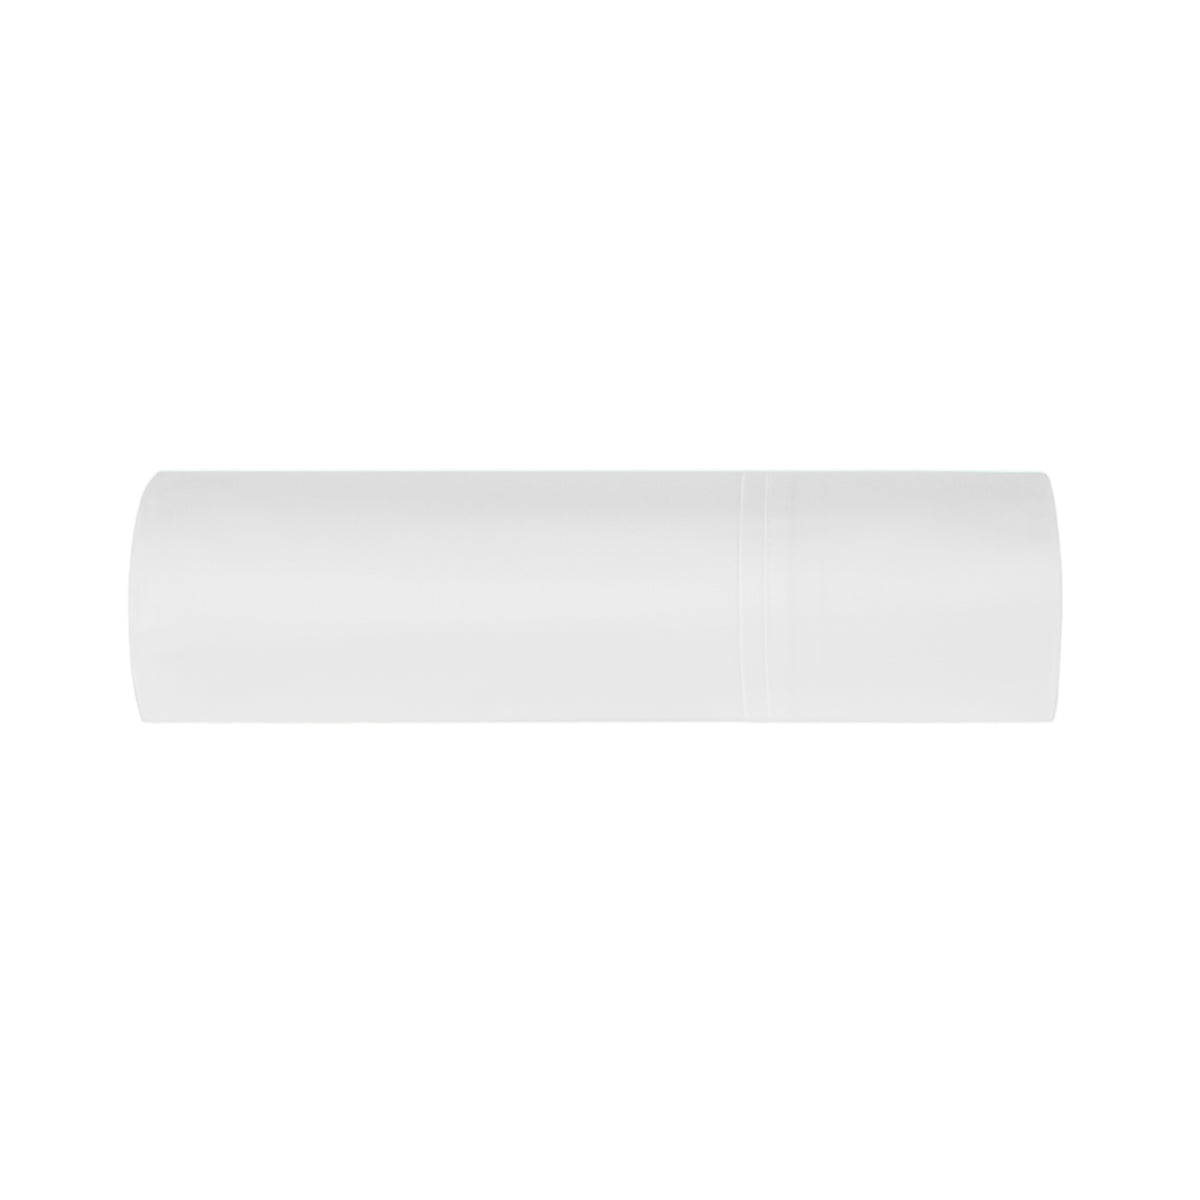 BOVI Estate Bedding Flat Sheet White/White Fine Linens